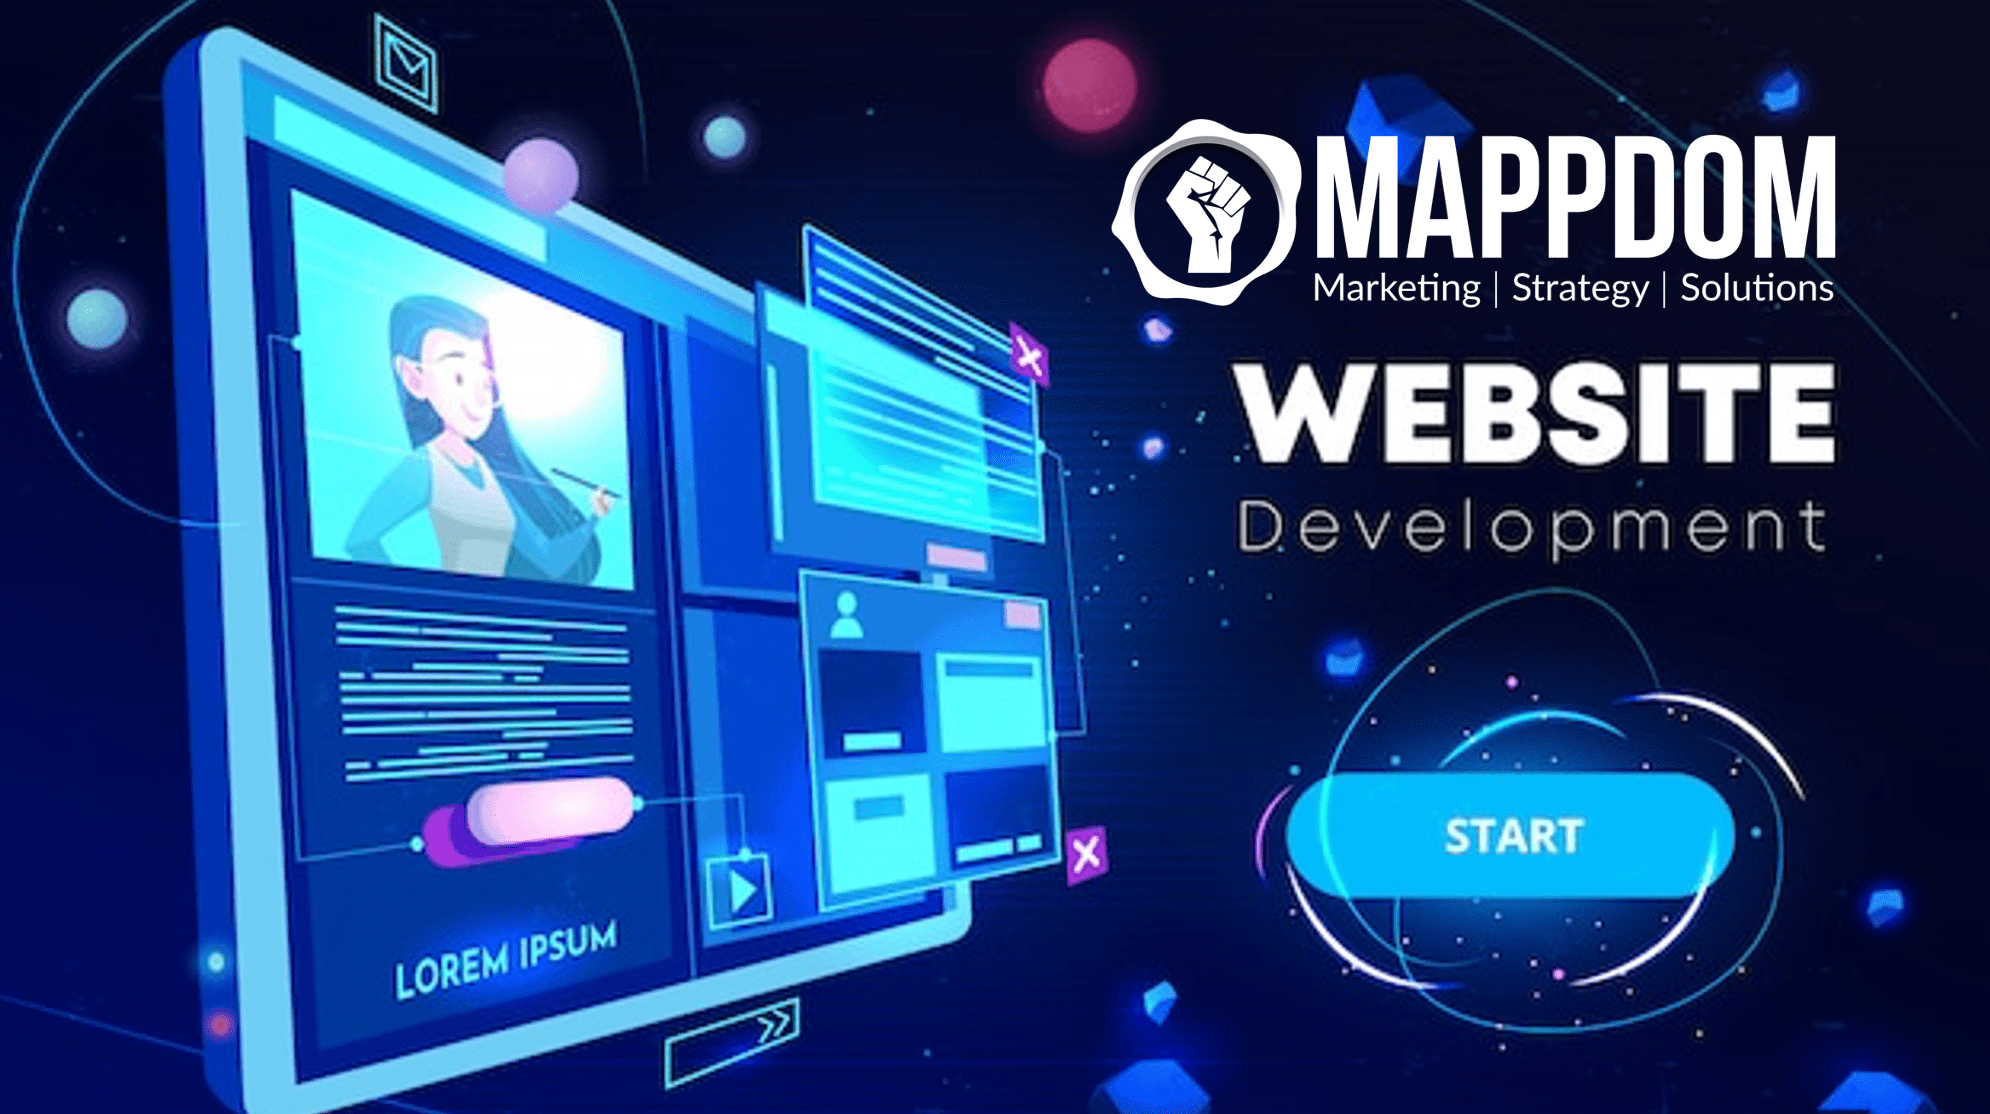 Mappdom Marketing Agency Near Me Website Development